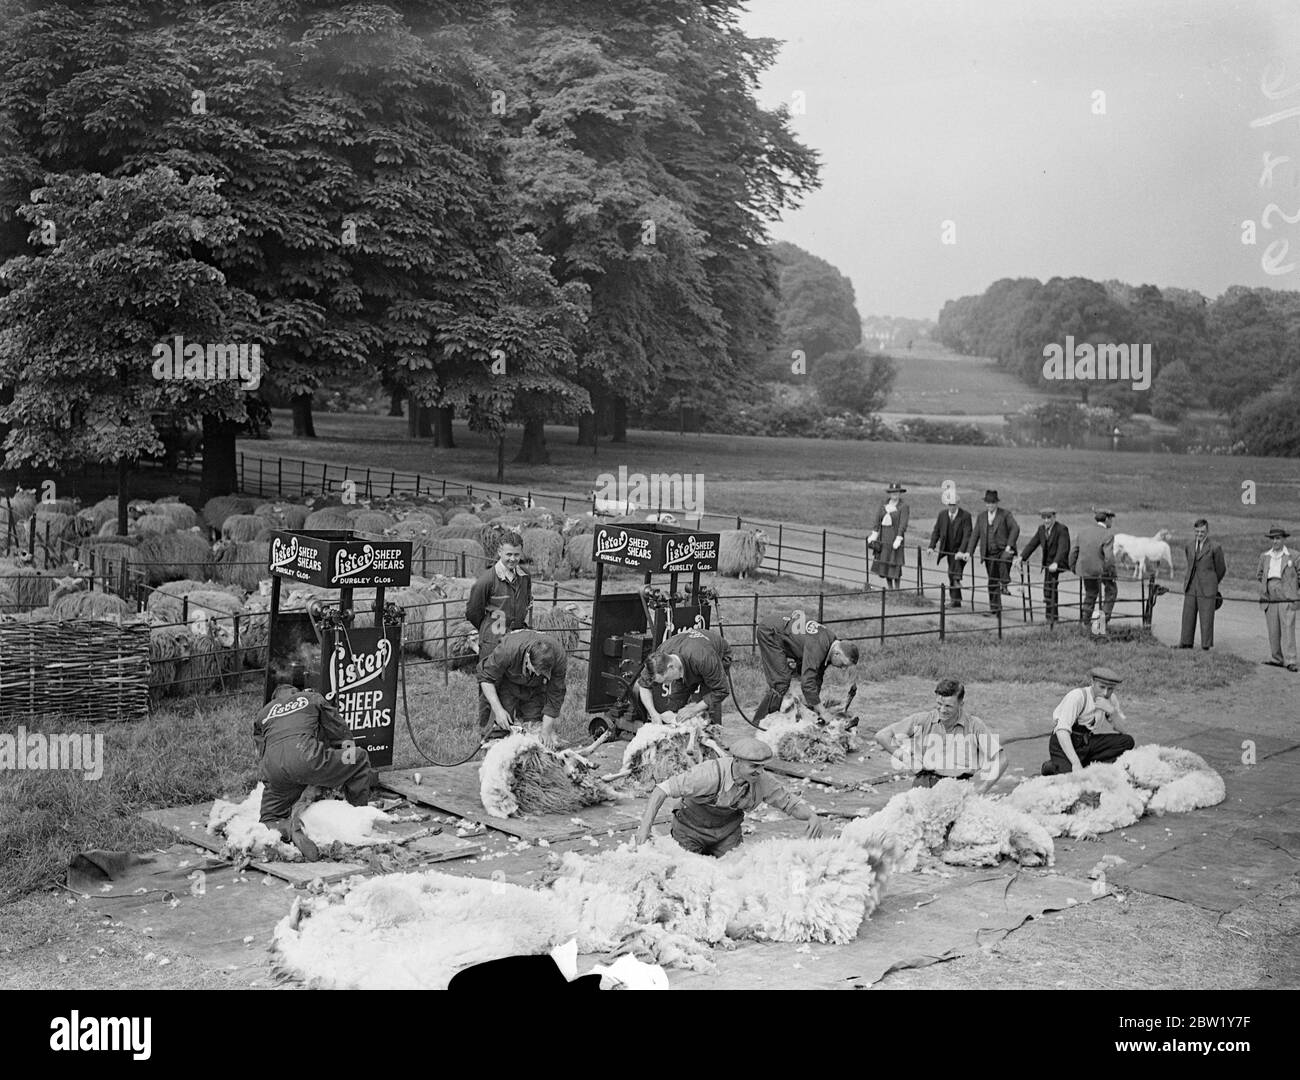 Tosatura di pecore nel cuore di Londra. Hyde Park Flock perde la sua lana. Il gregge di pecore di Londra viene ora impaessato ad Hyde Park dopo aver portato la lana alcune settimane più a lungo del solito quest'anno, a causa dell'incoronazione e della presenza di truppe nei Kensington Gardens. Ci sono circa 500 pecore in Hyde Park e la tosatura è stata effettuata meccanicamente da per esperto Shearer's da allevamenti di pecore in Galles. Foto mostra, pecore che perdono la lana sotto le mani di Seft del Shearer in Hyde Park. 7 giugno 1937 Foto Stock